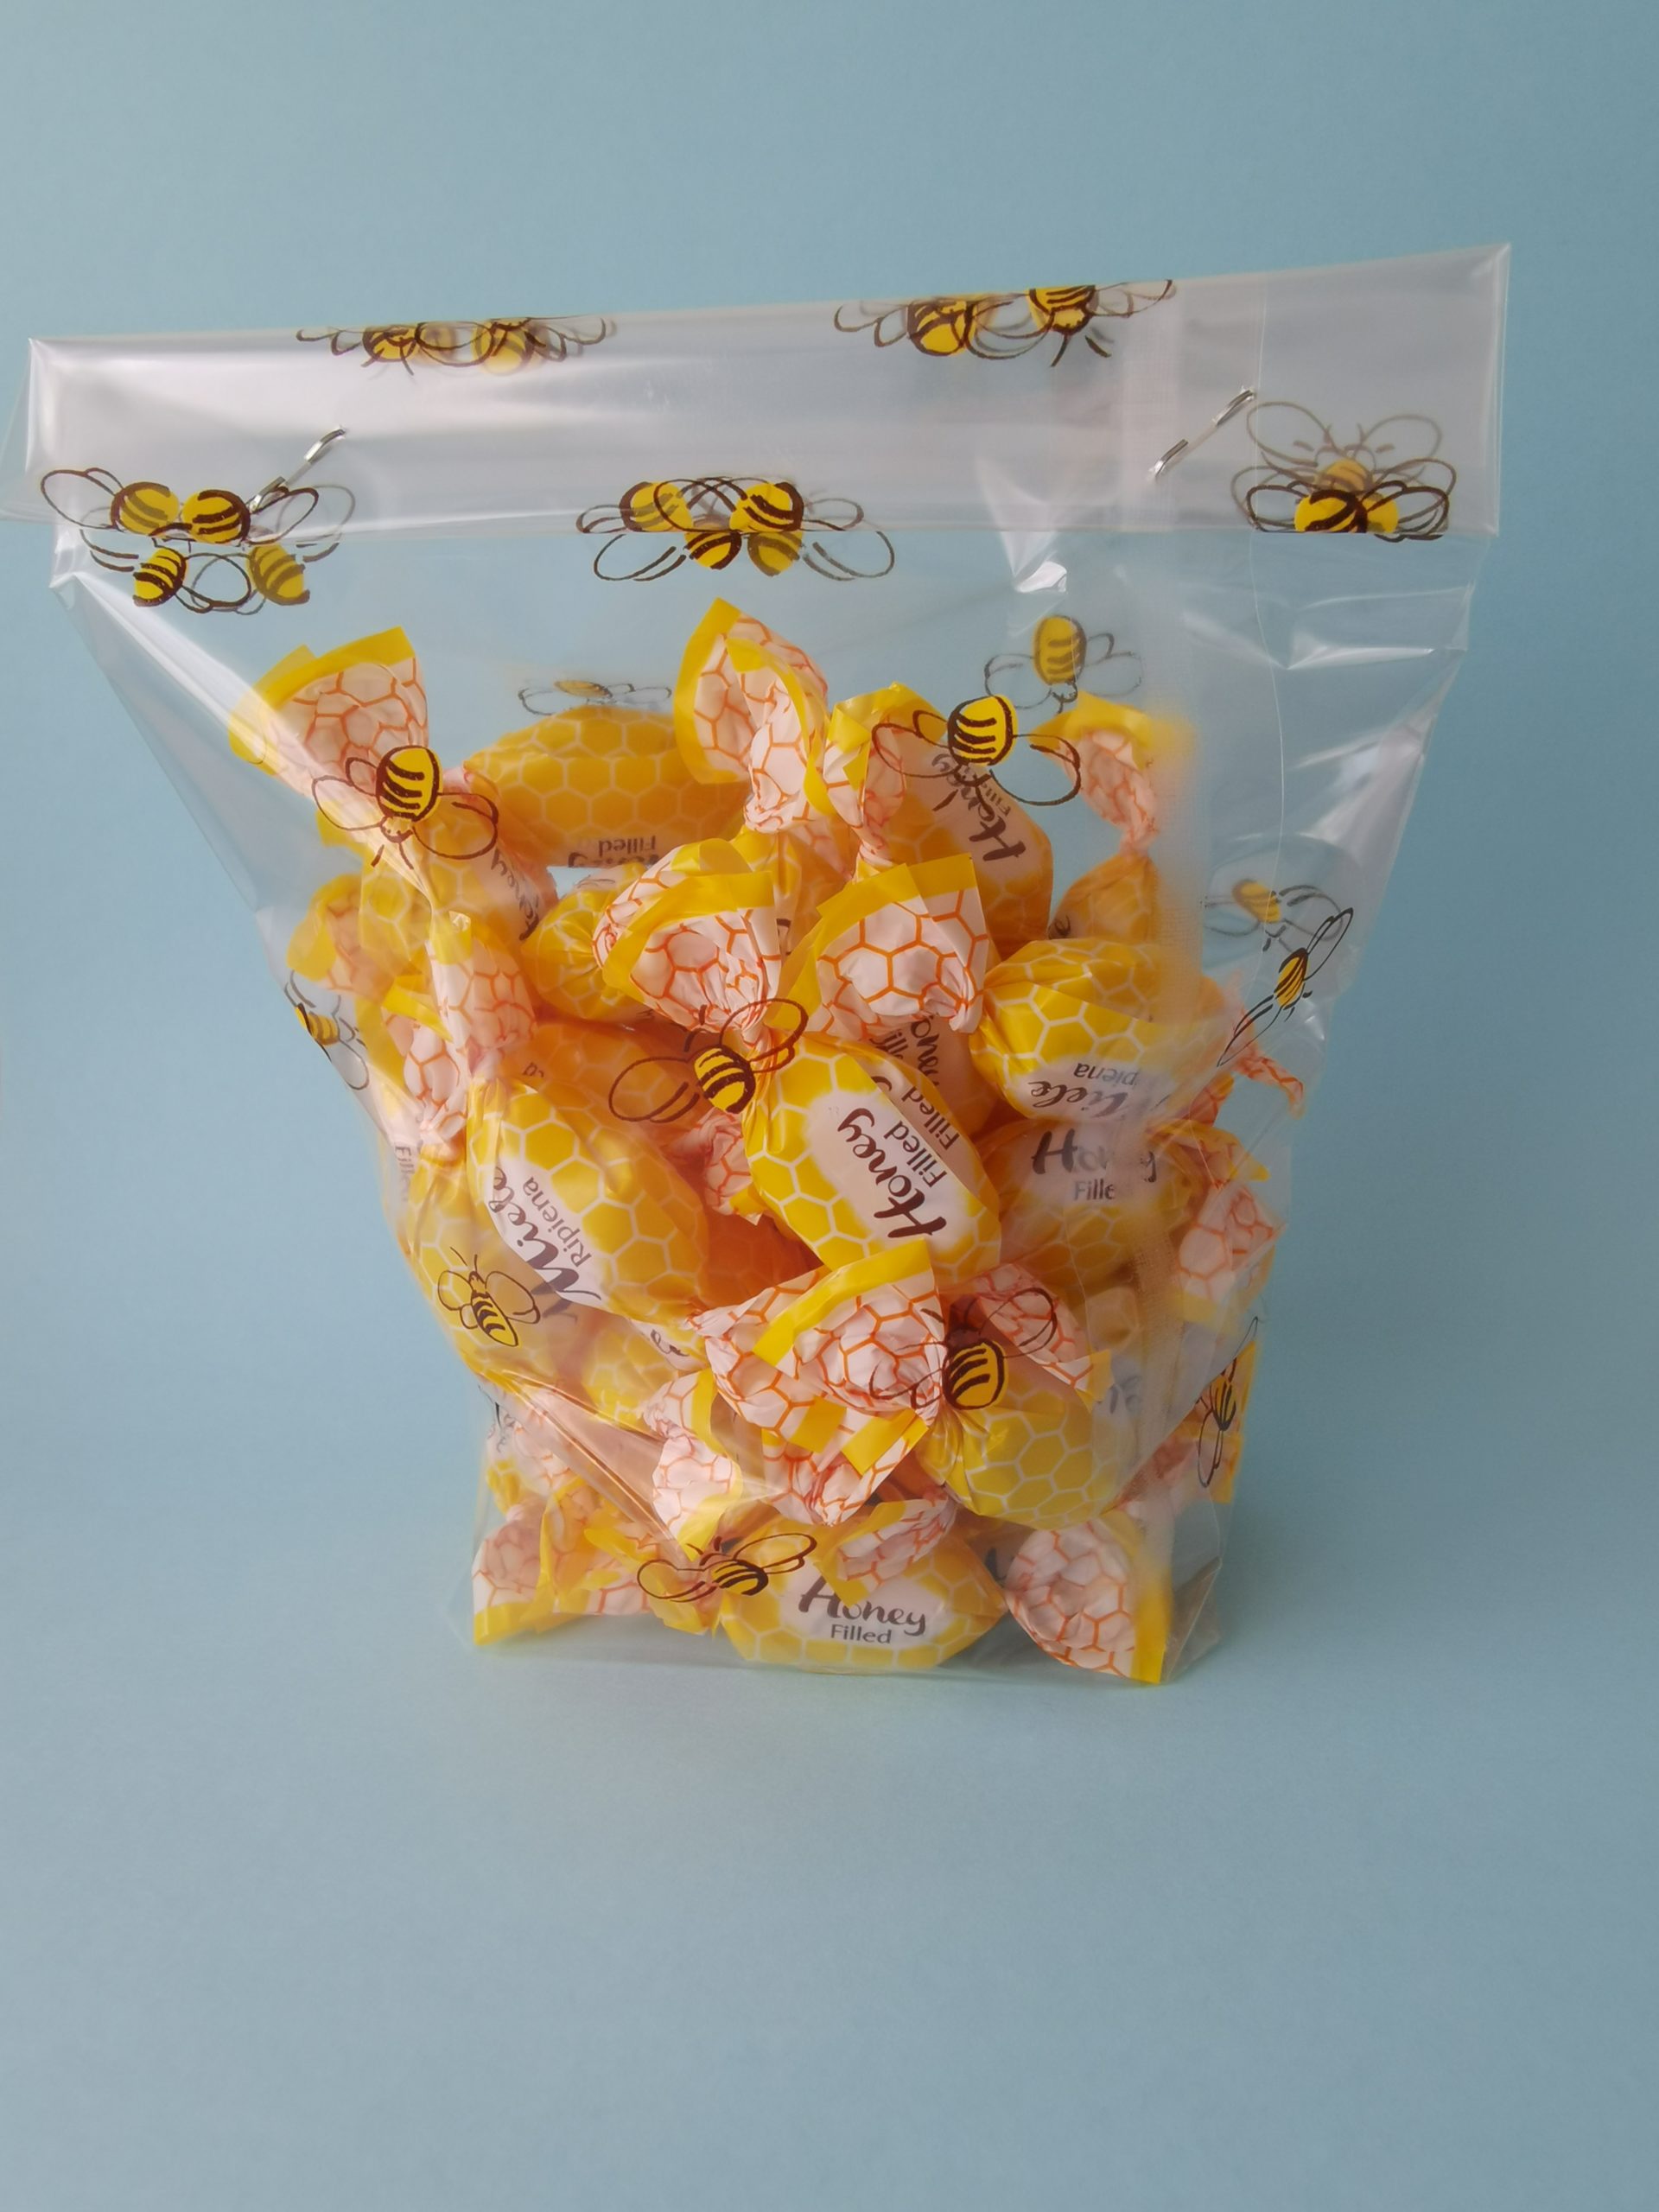 [:fr]Bonbons durs au miel[:en]Honey candies[:]